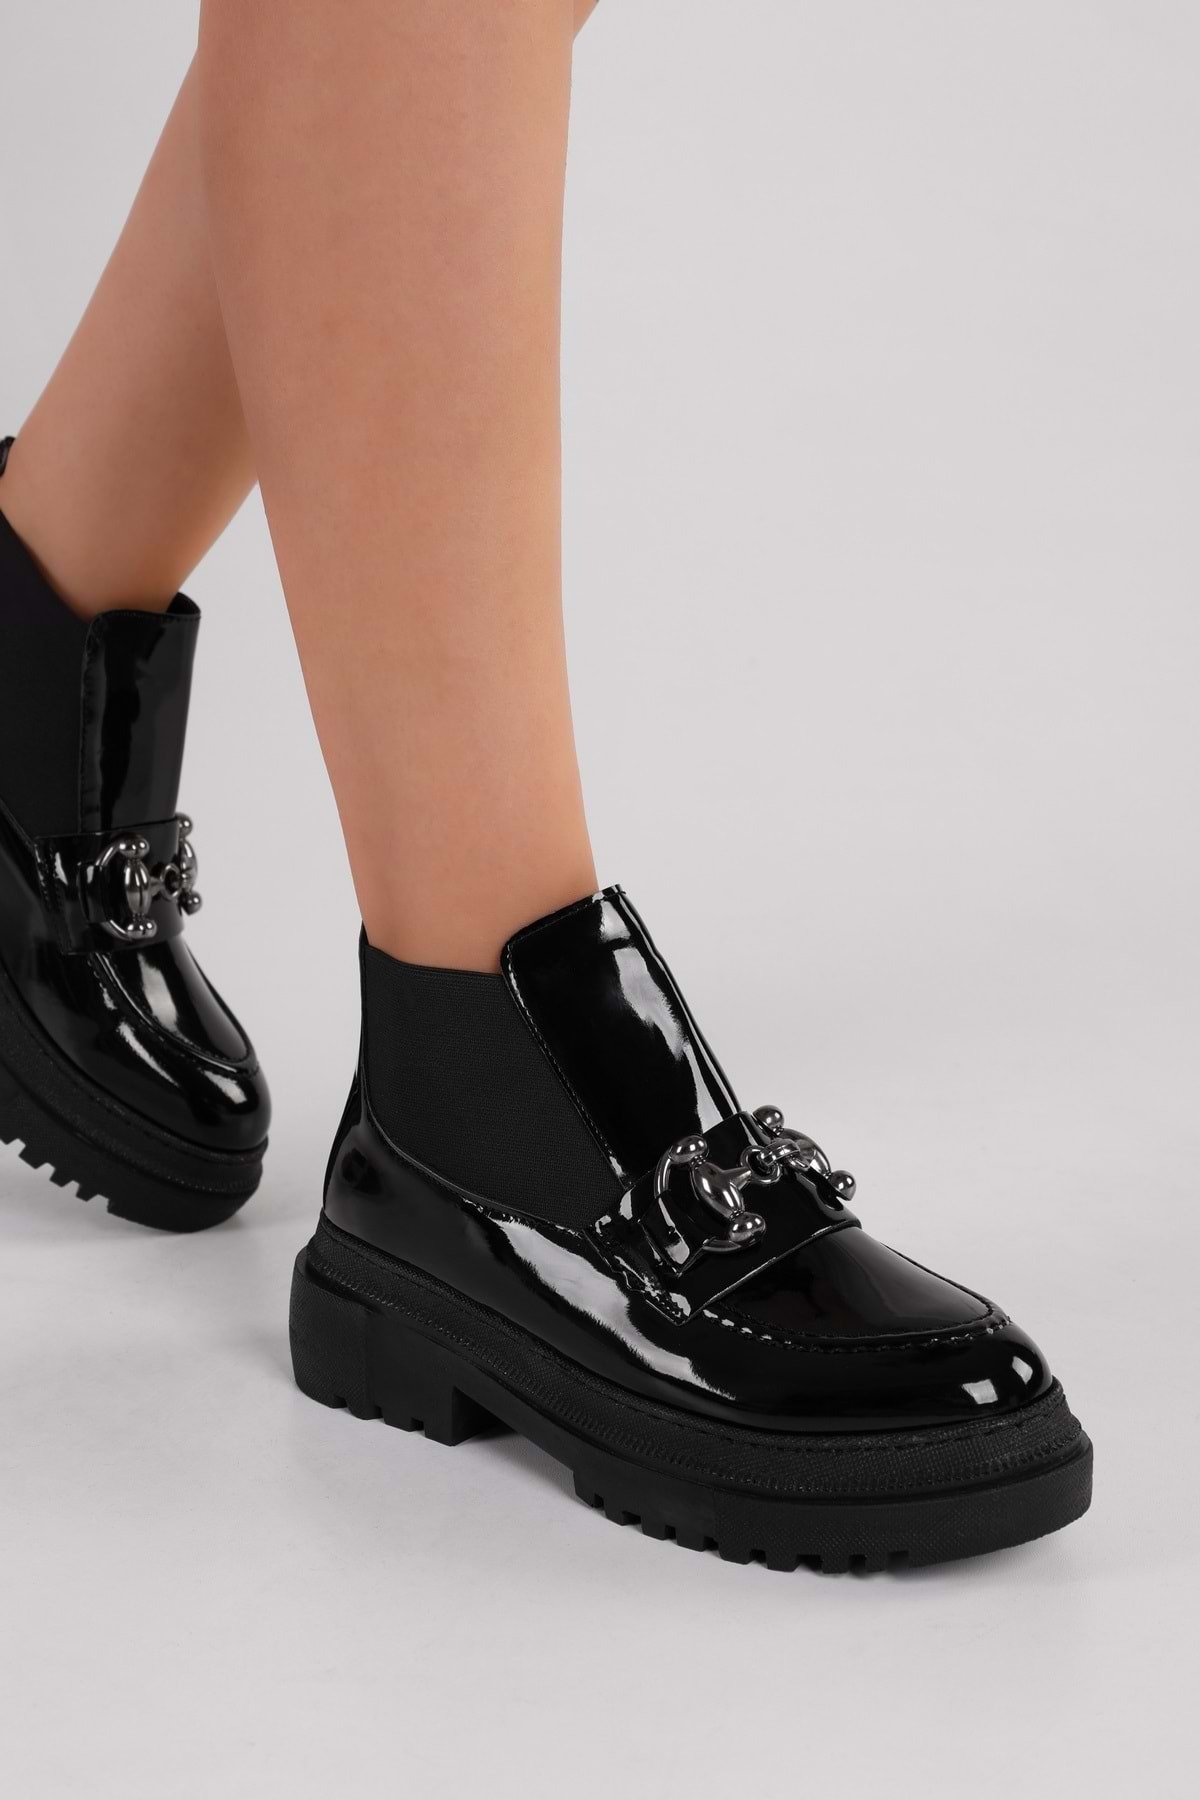 Levně Shoeberry Women's Tastor Black Patent Leather Buckle Boots Loafer Black Patent Leather